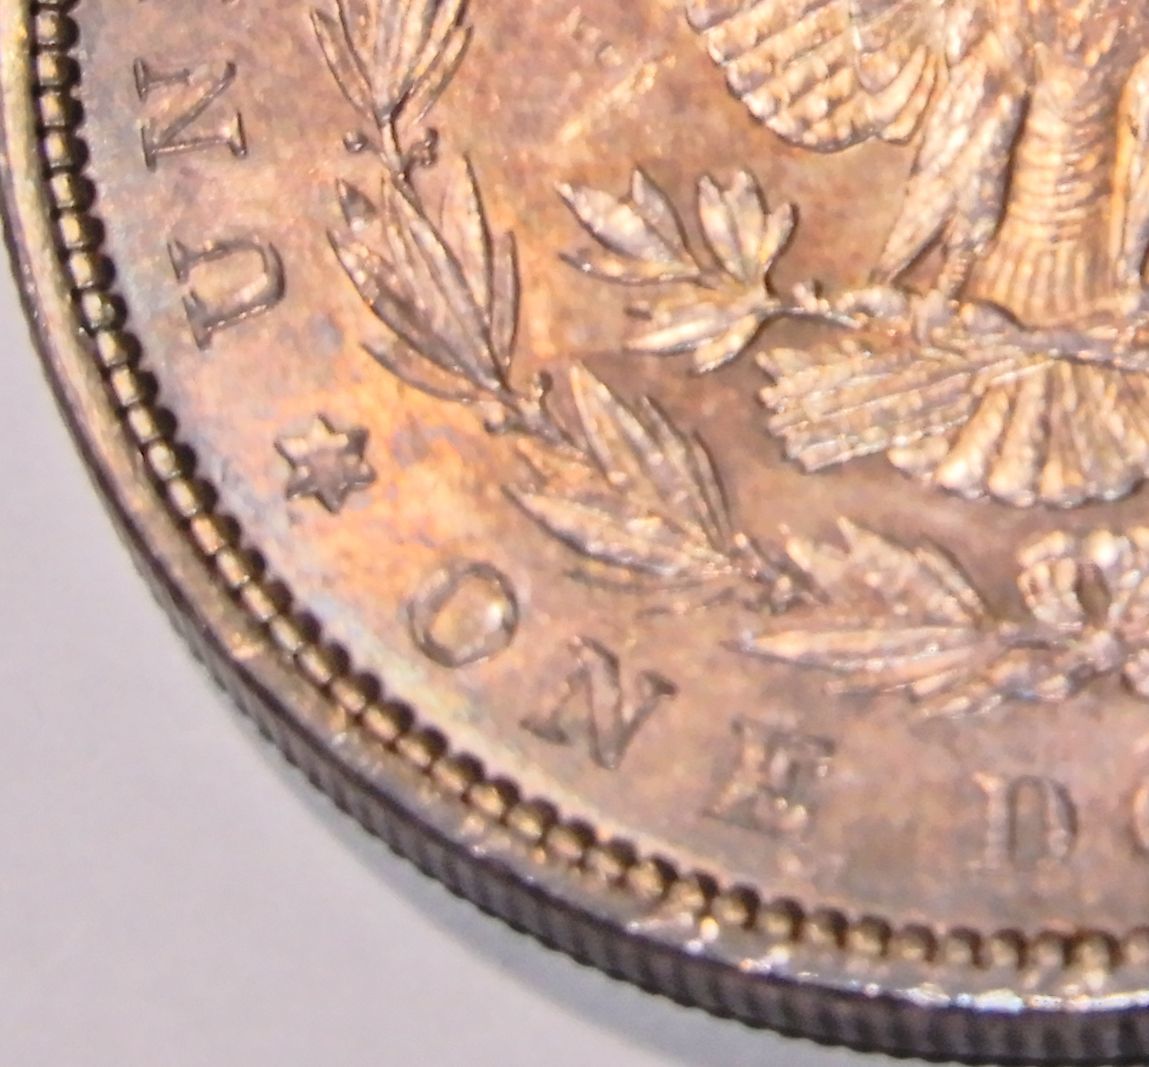 レア 未使用 手変わり 1897年 アメリカ モルガンダラー 1ドル Dollar 銀貨 銀製 コイン 硬貨 古銭 メダル 自由の女神 アメリカンイーグル鷲